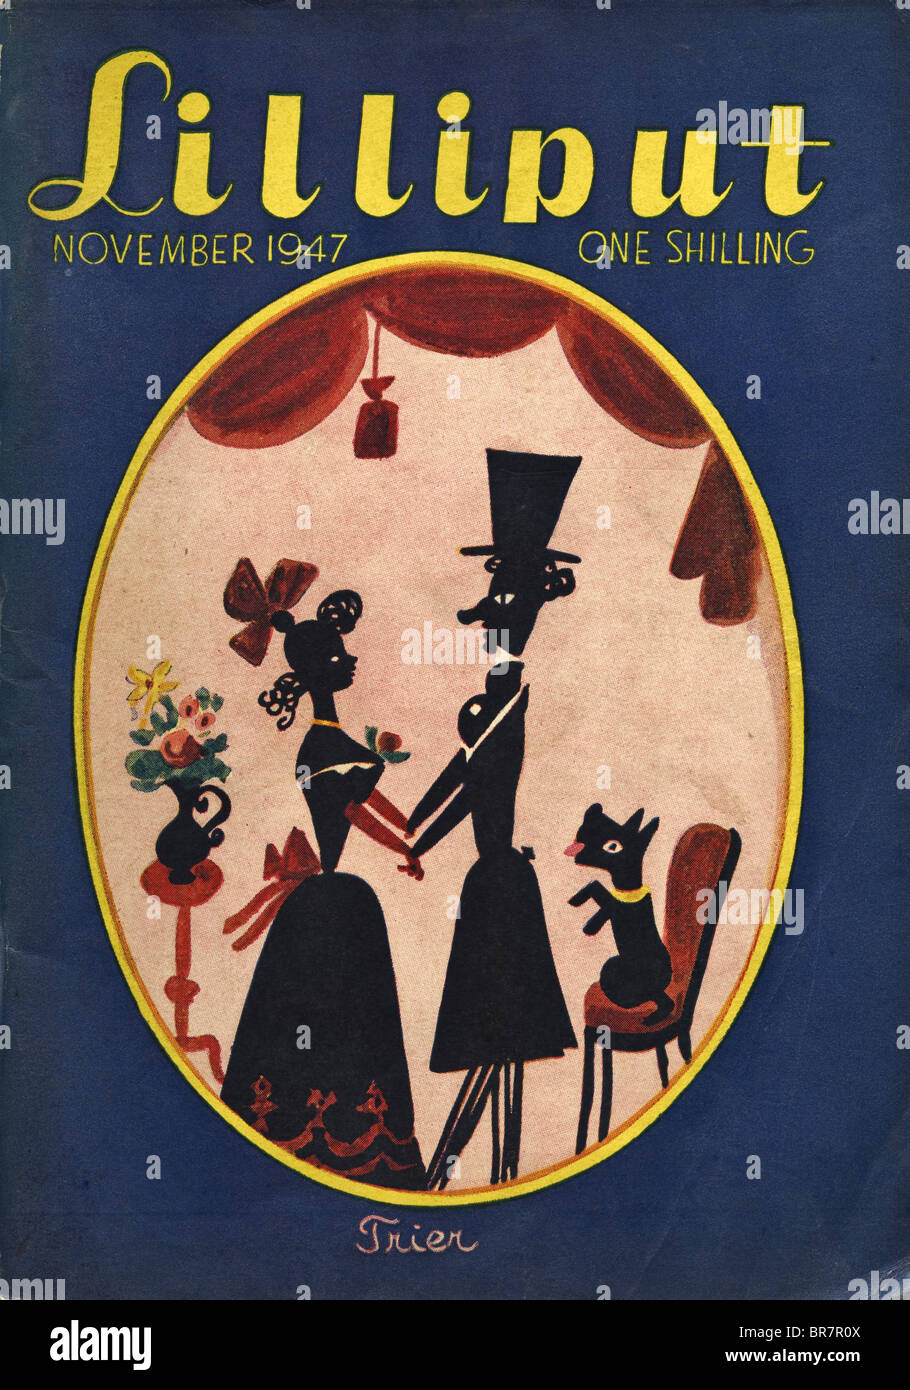 Lilliput couverture de magazine avec une illustration de Walter Trier daté de novembre 1947 au prix de un shilling Banque D'Images